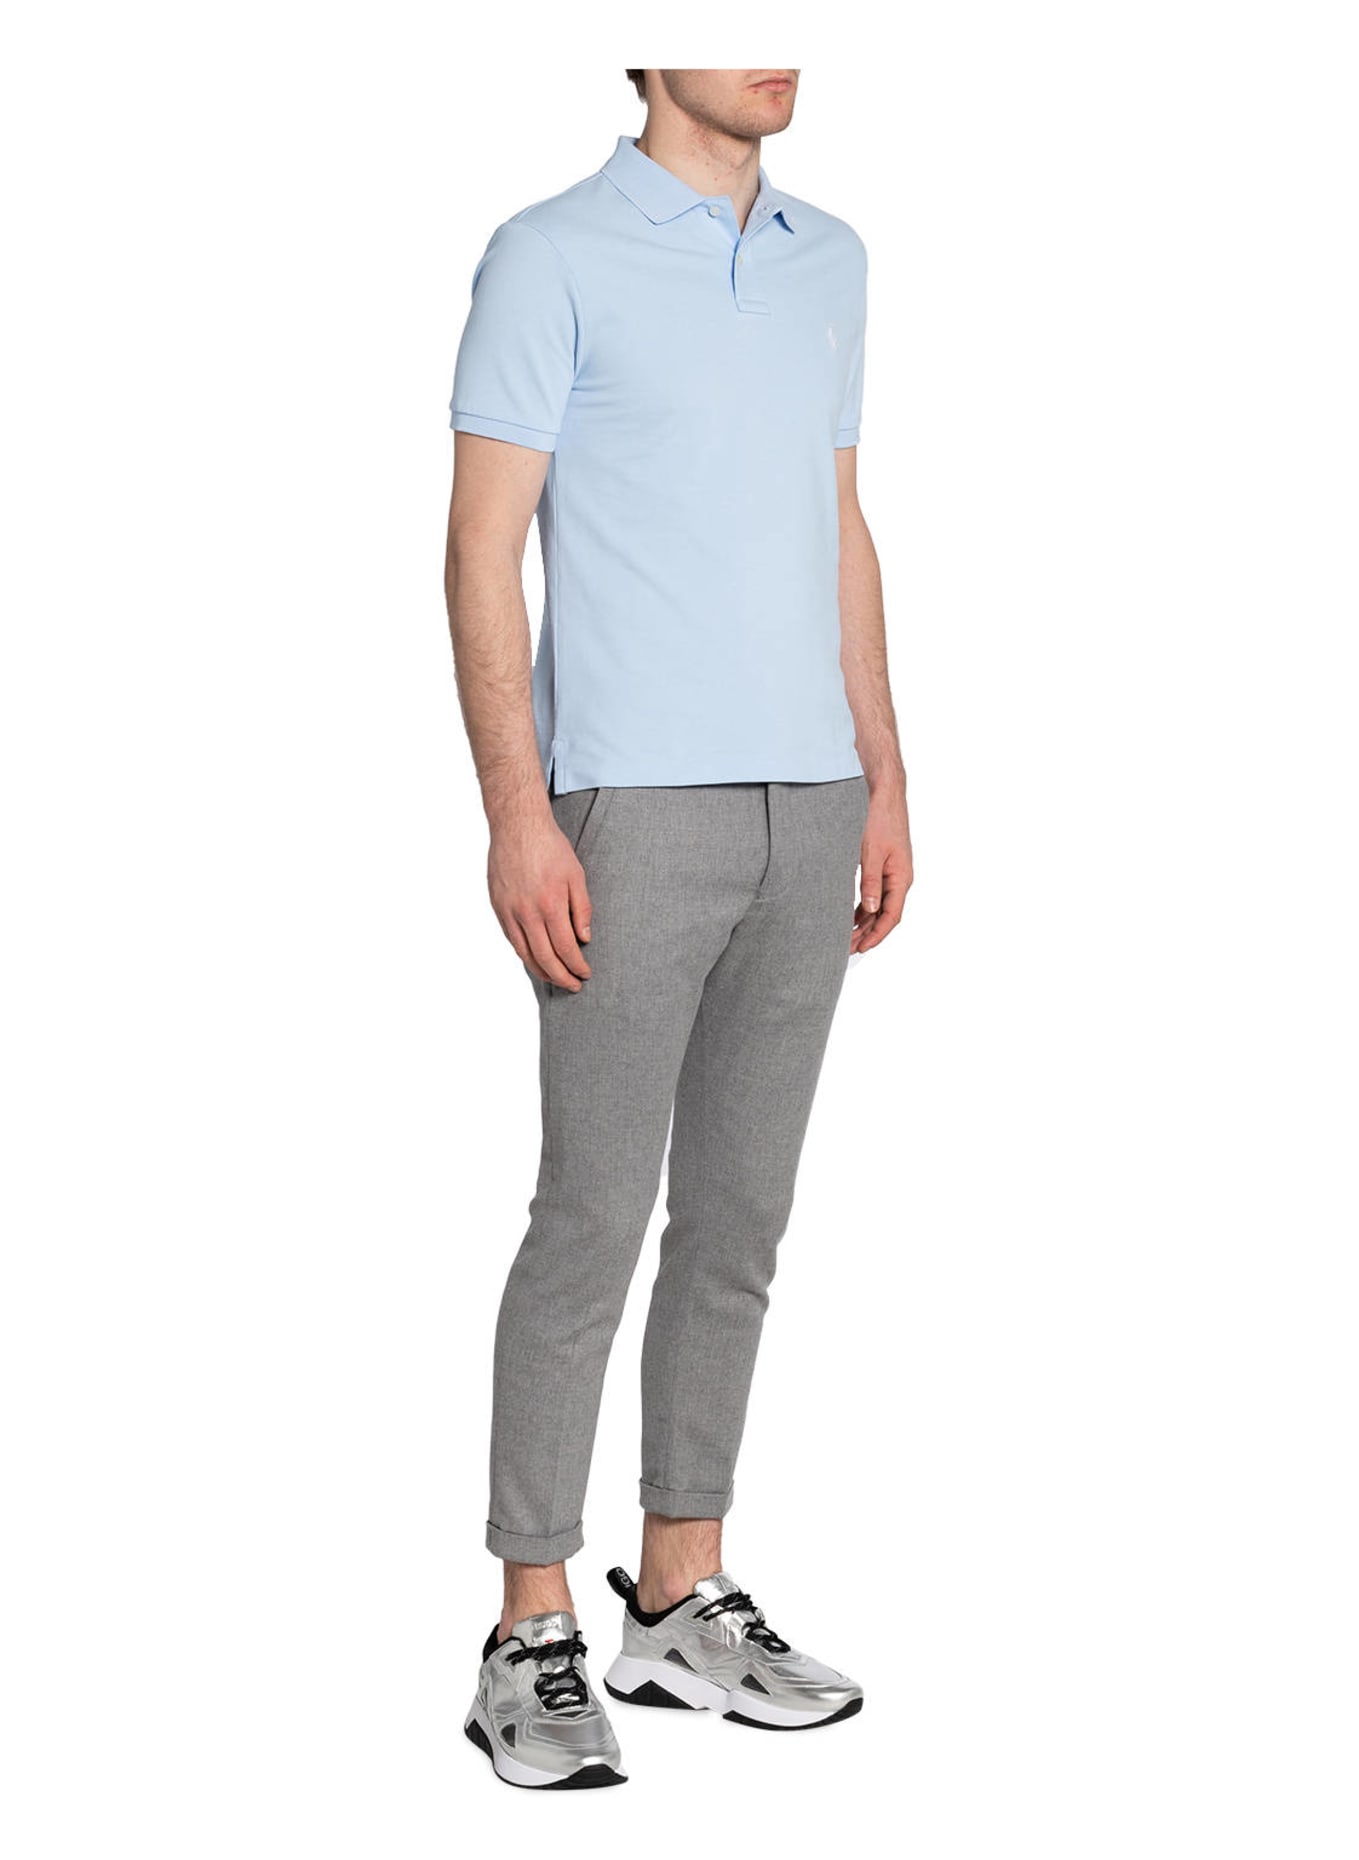 POLO RALPH LAUREN Piqué-Poloshirt Slim Fit, Farbe: HELLBLAU (Bild 2)